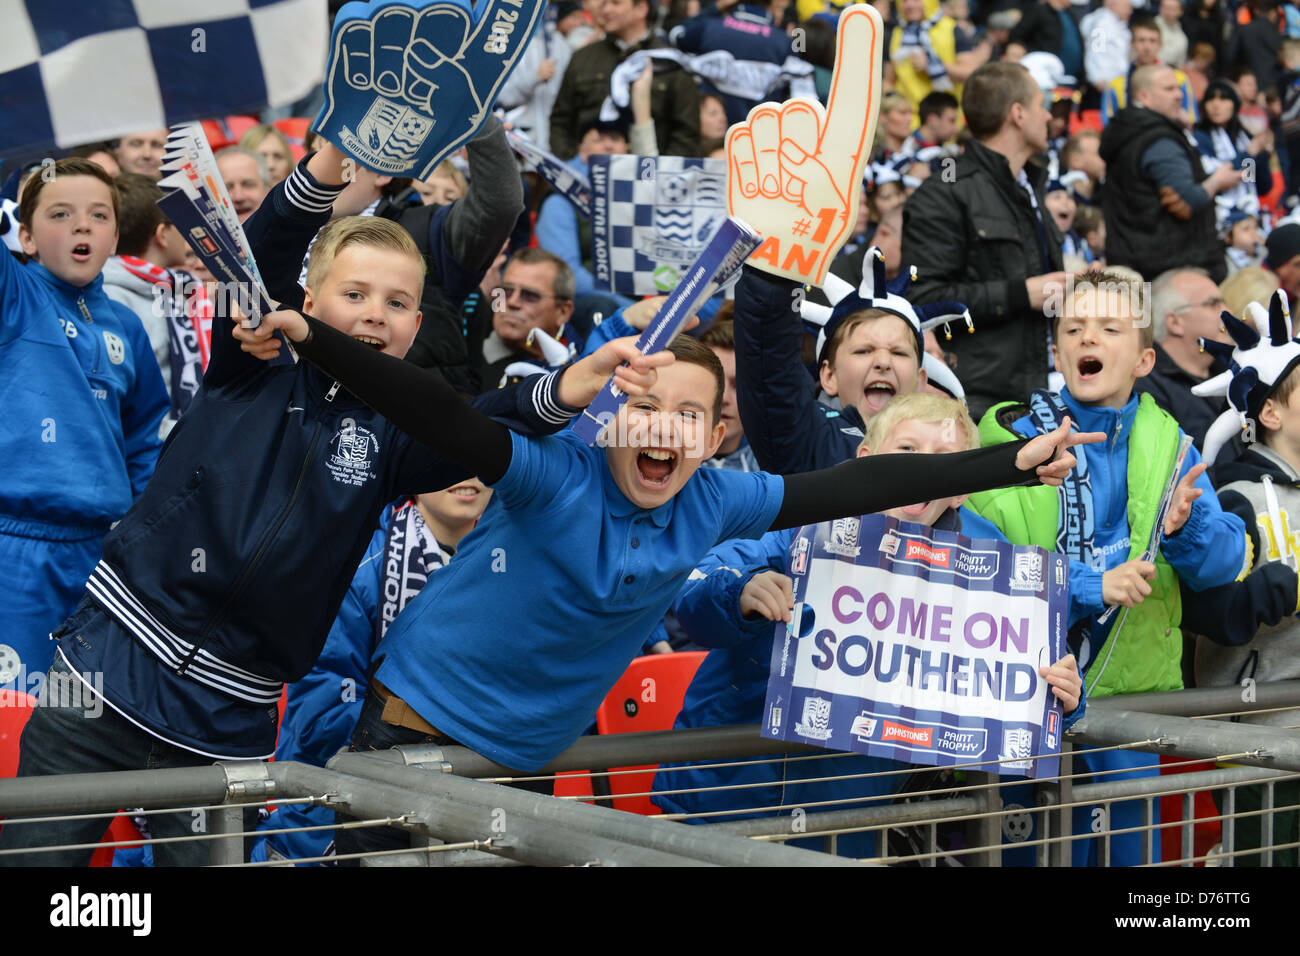 Jeunes fans de football supporters de Southend au stade de Wembley Banque D'Images